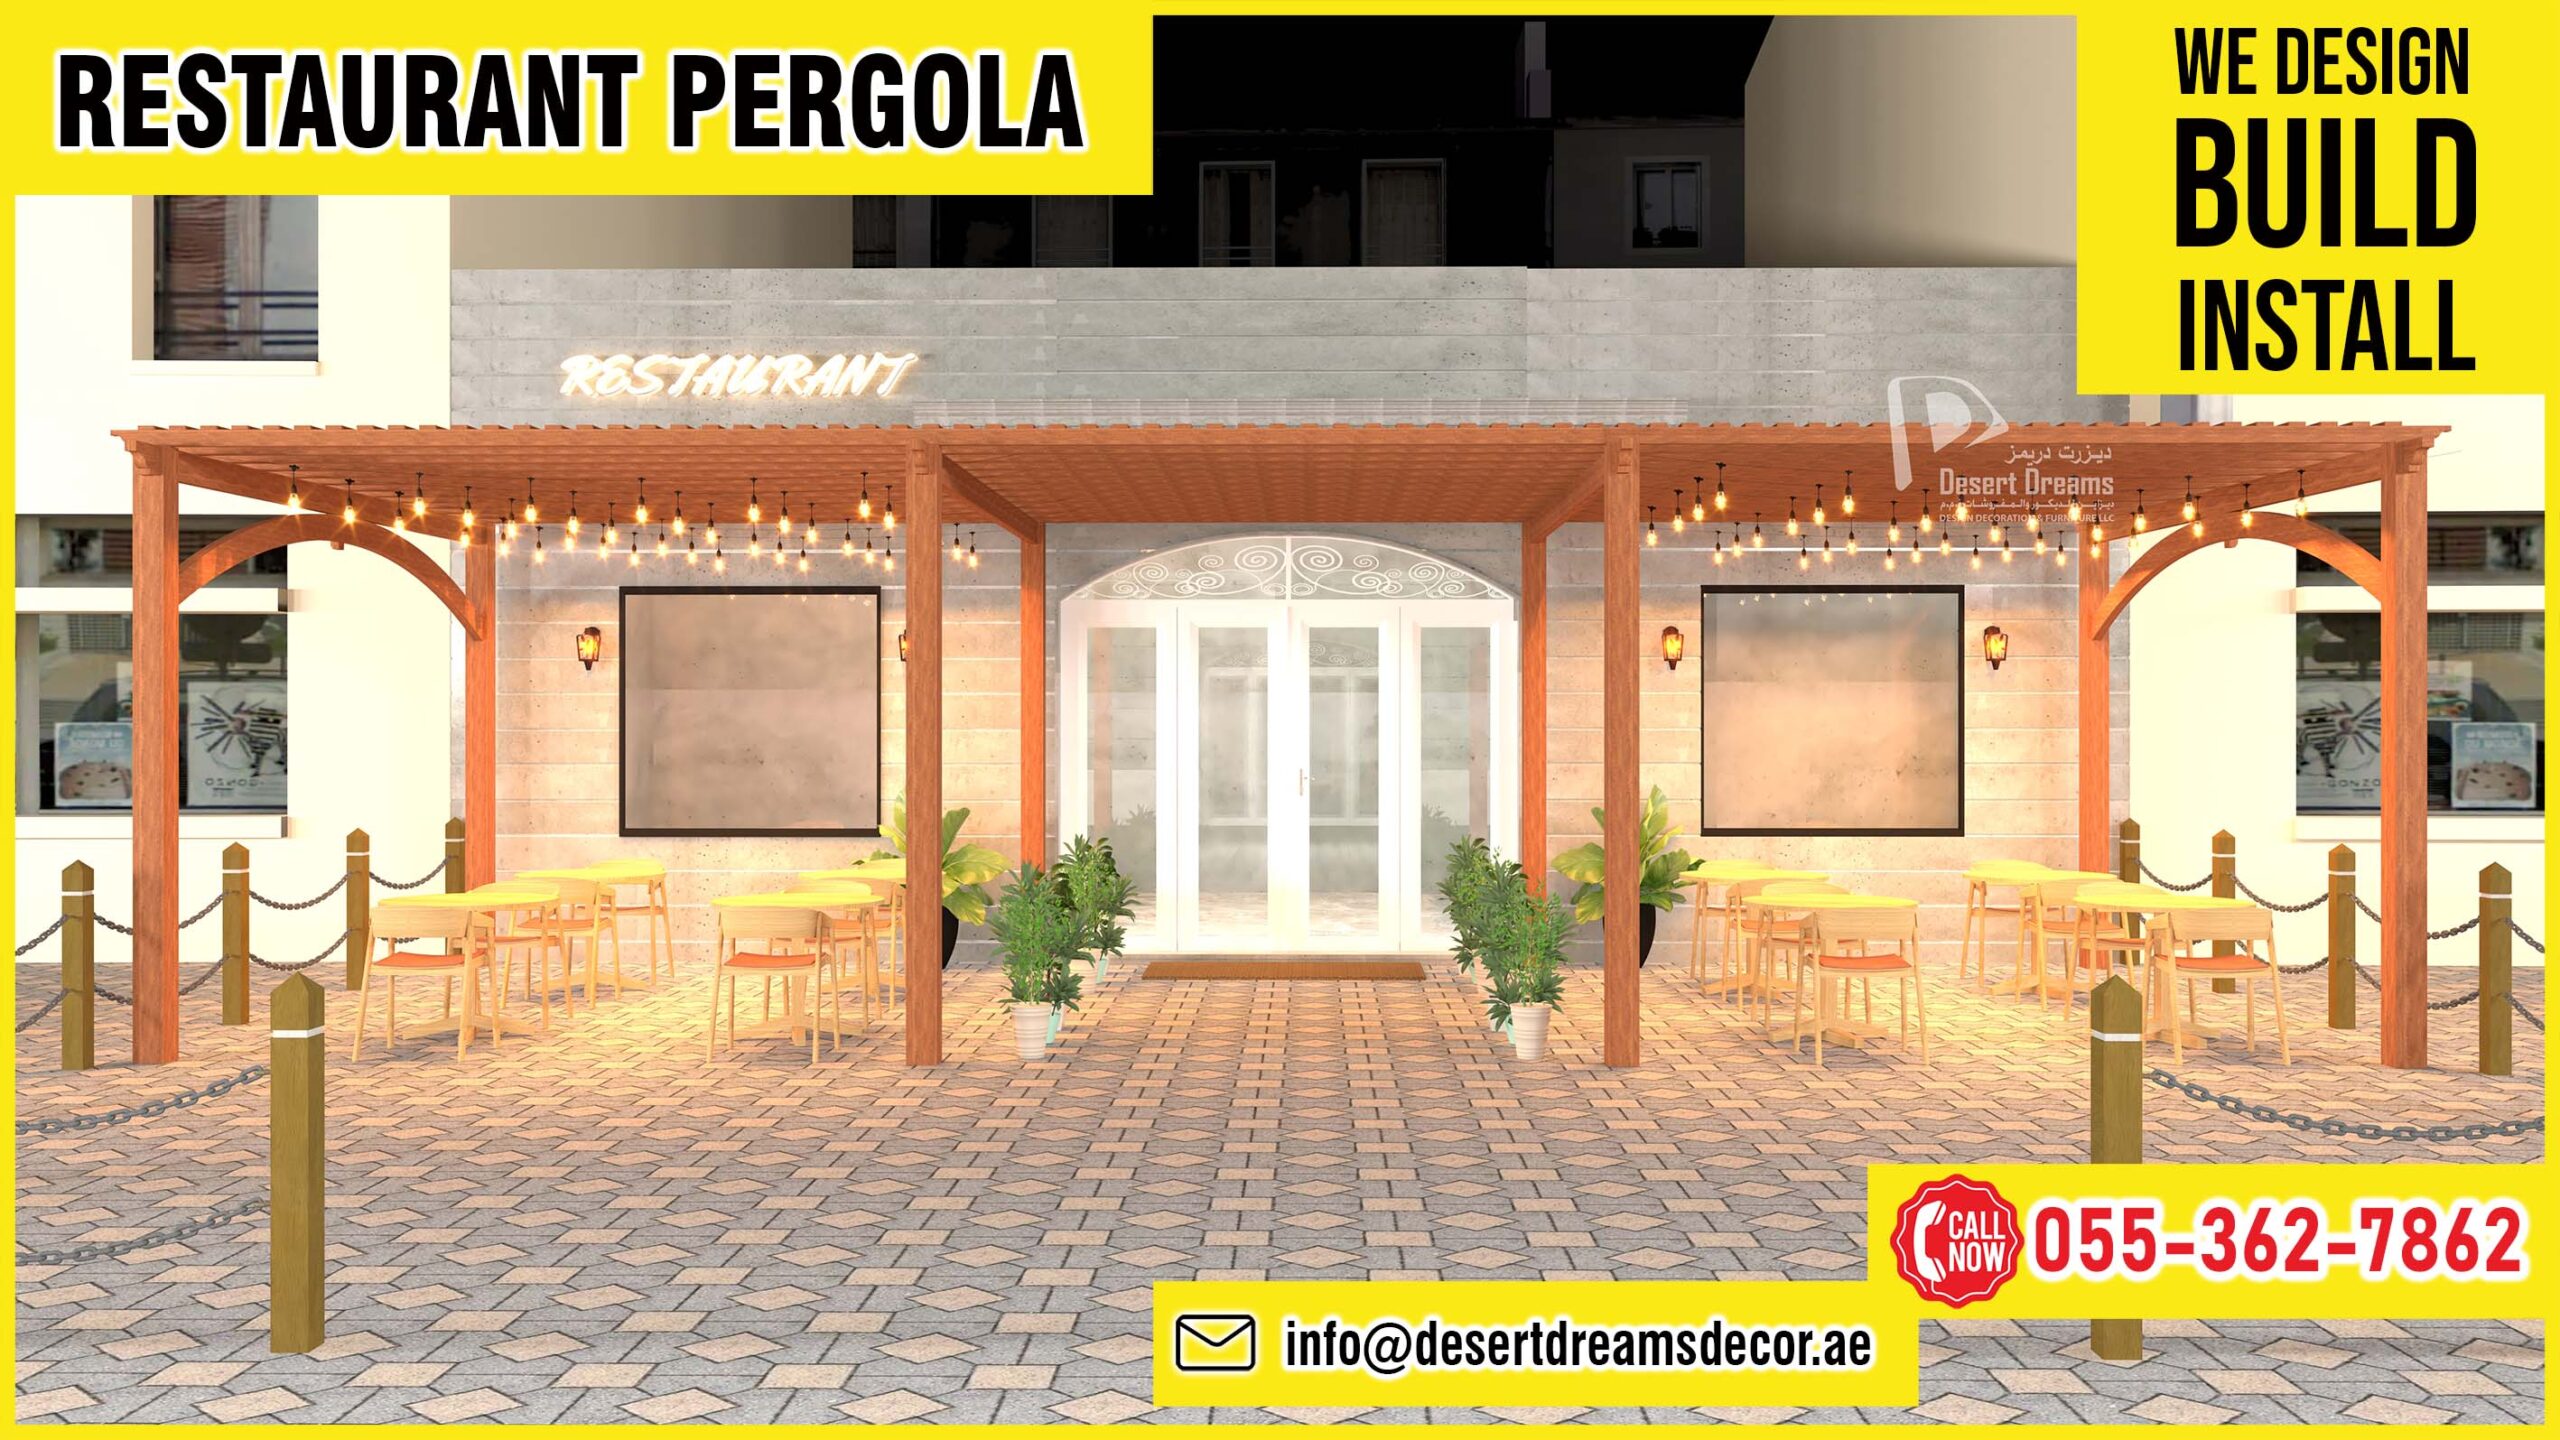 Restaurant Pergola Dubai_Restaurant Pergola Uae_Restaurant Pergola Abu Dhabi (1).jpg